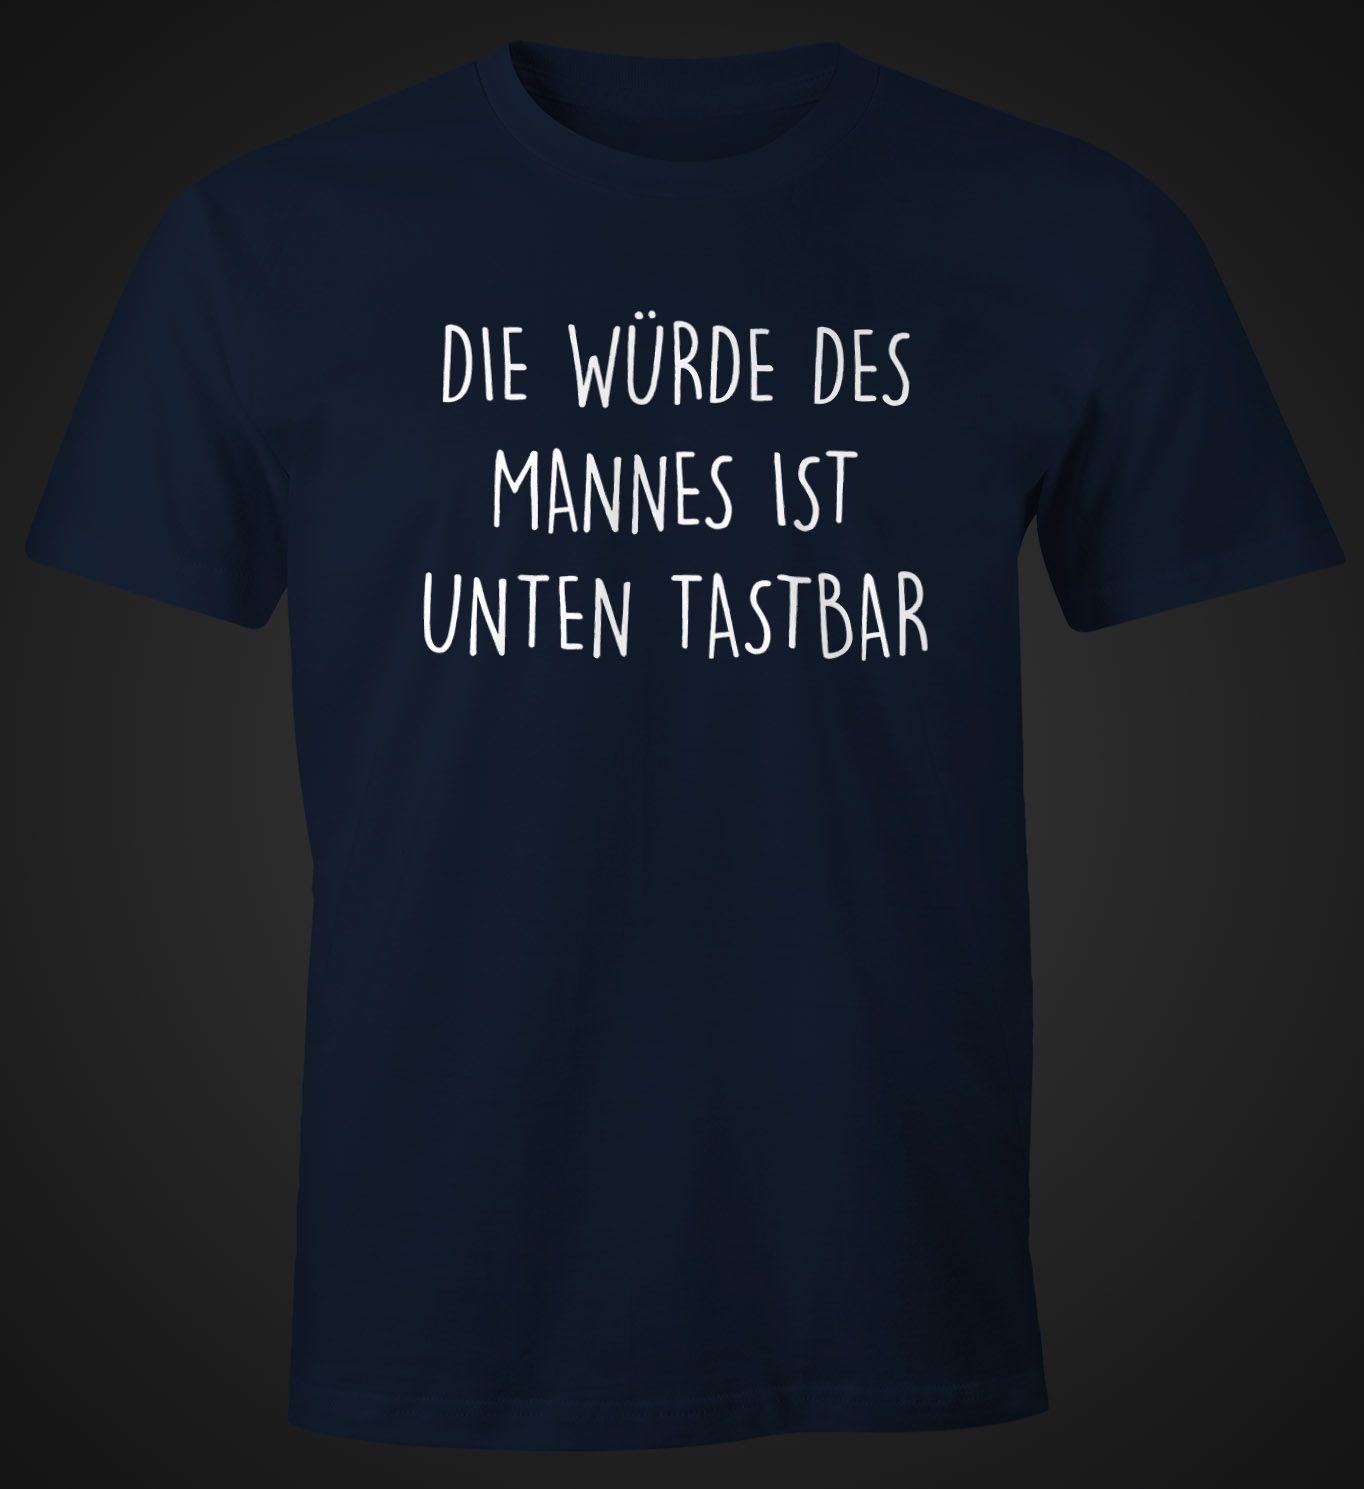 Die MoonWorks ist Spruch mit Herren Print-Shirt Moonworks® Mannes T-Shirt mit tastbar Fun-Shirt navy Würde Print des Lustiges unten